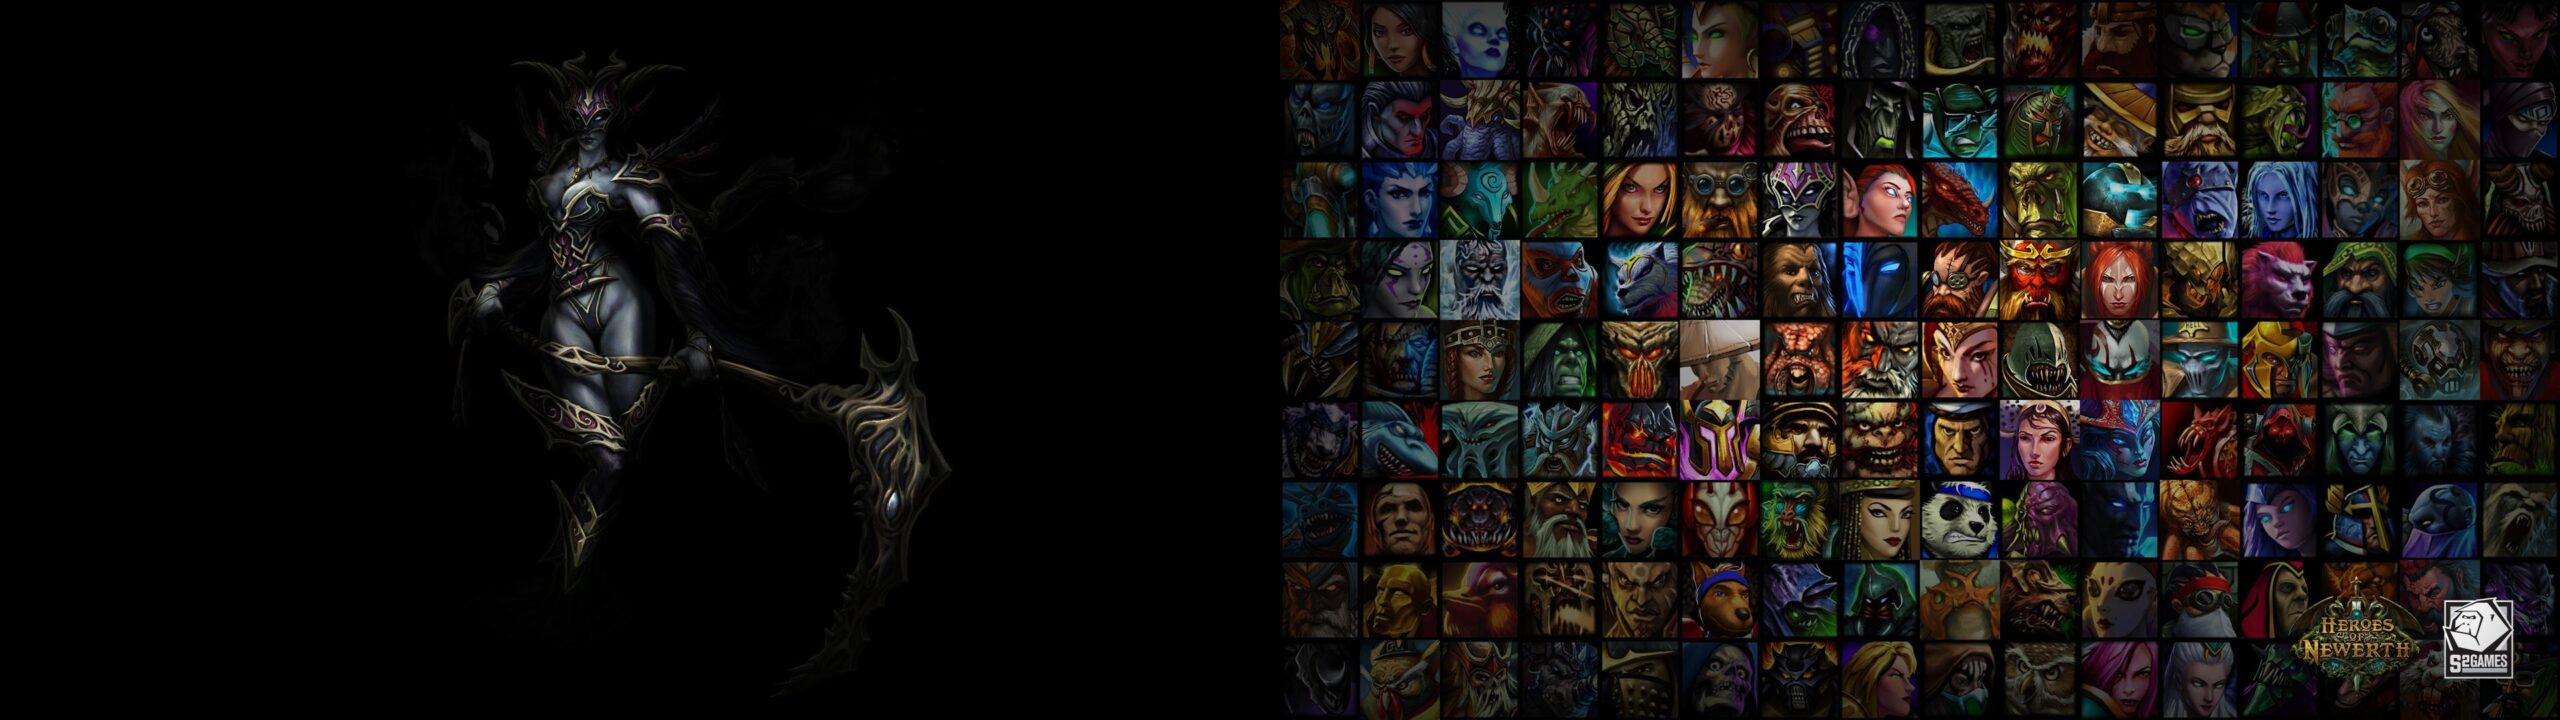 Dark Souls Dual Screen Wallpapers